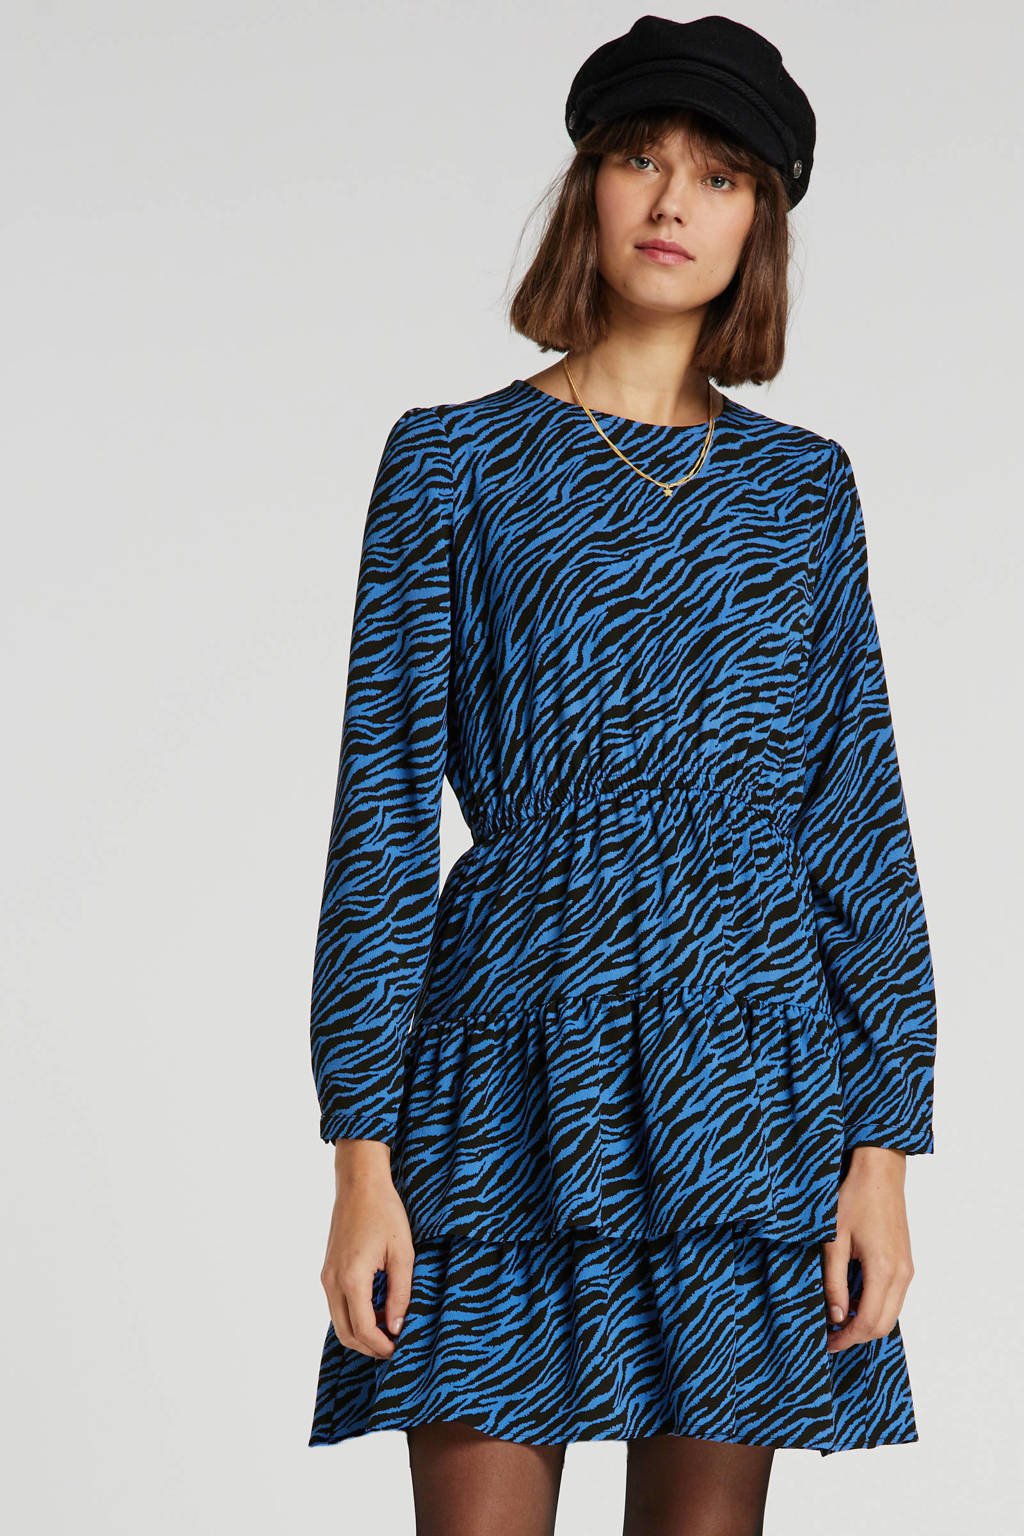 anytime jurk in zebraprint blauw/zwart